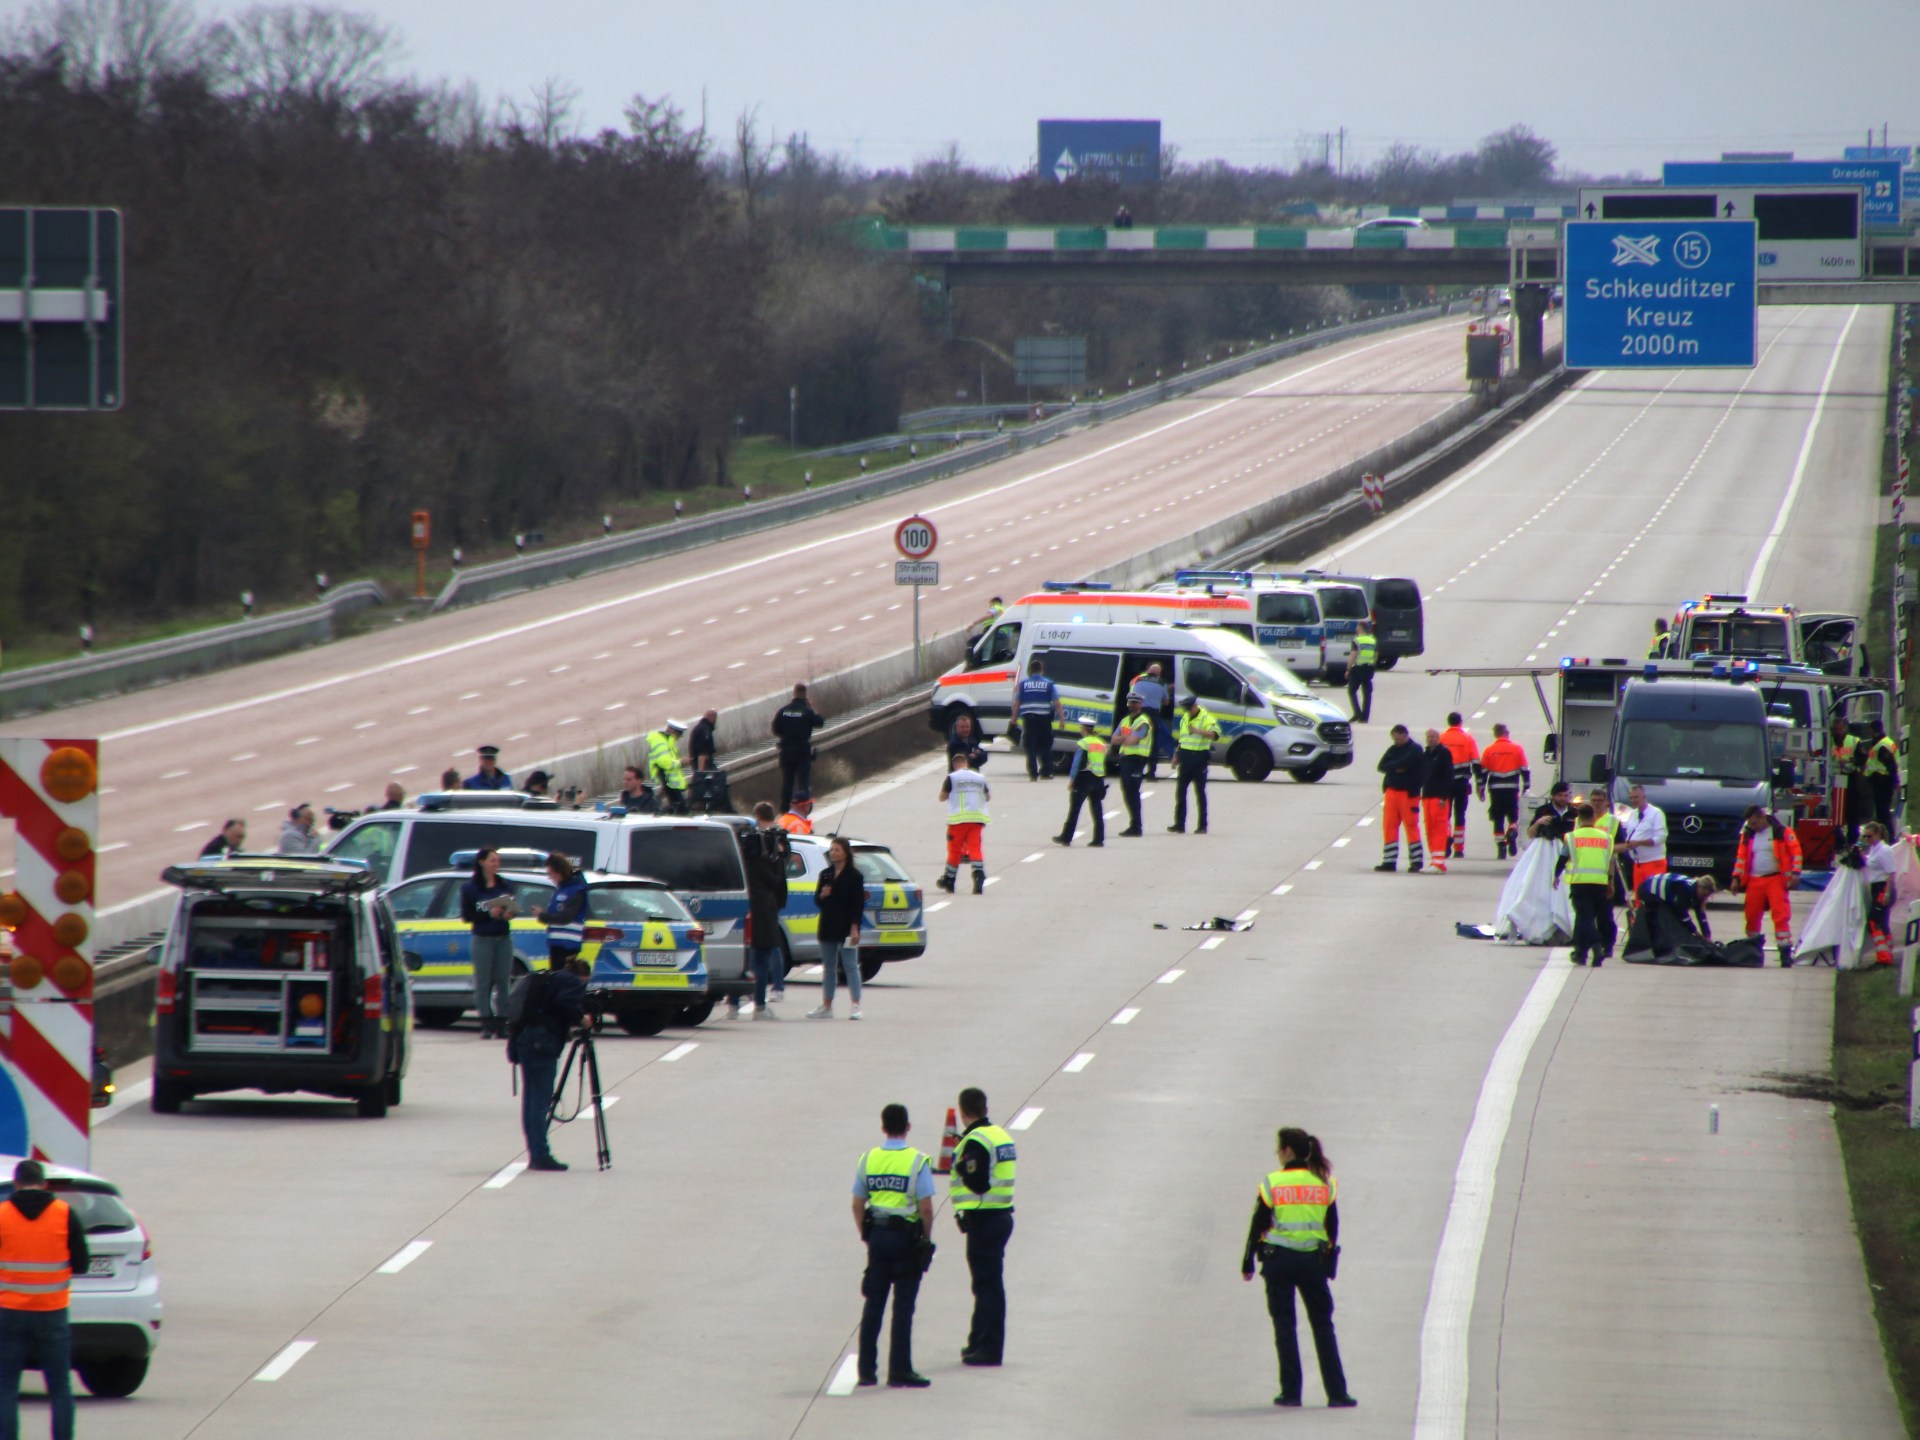 Incidente autobus Flixbus in Germania: almeno cinque morti quando l'autobus esce dall'autostrada |  Notizia